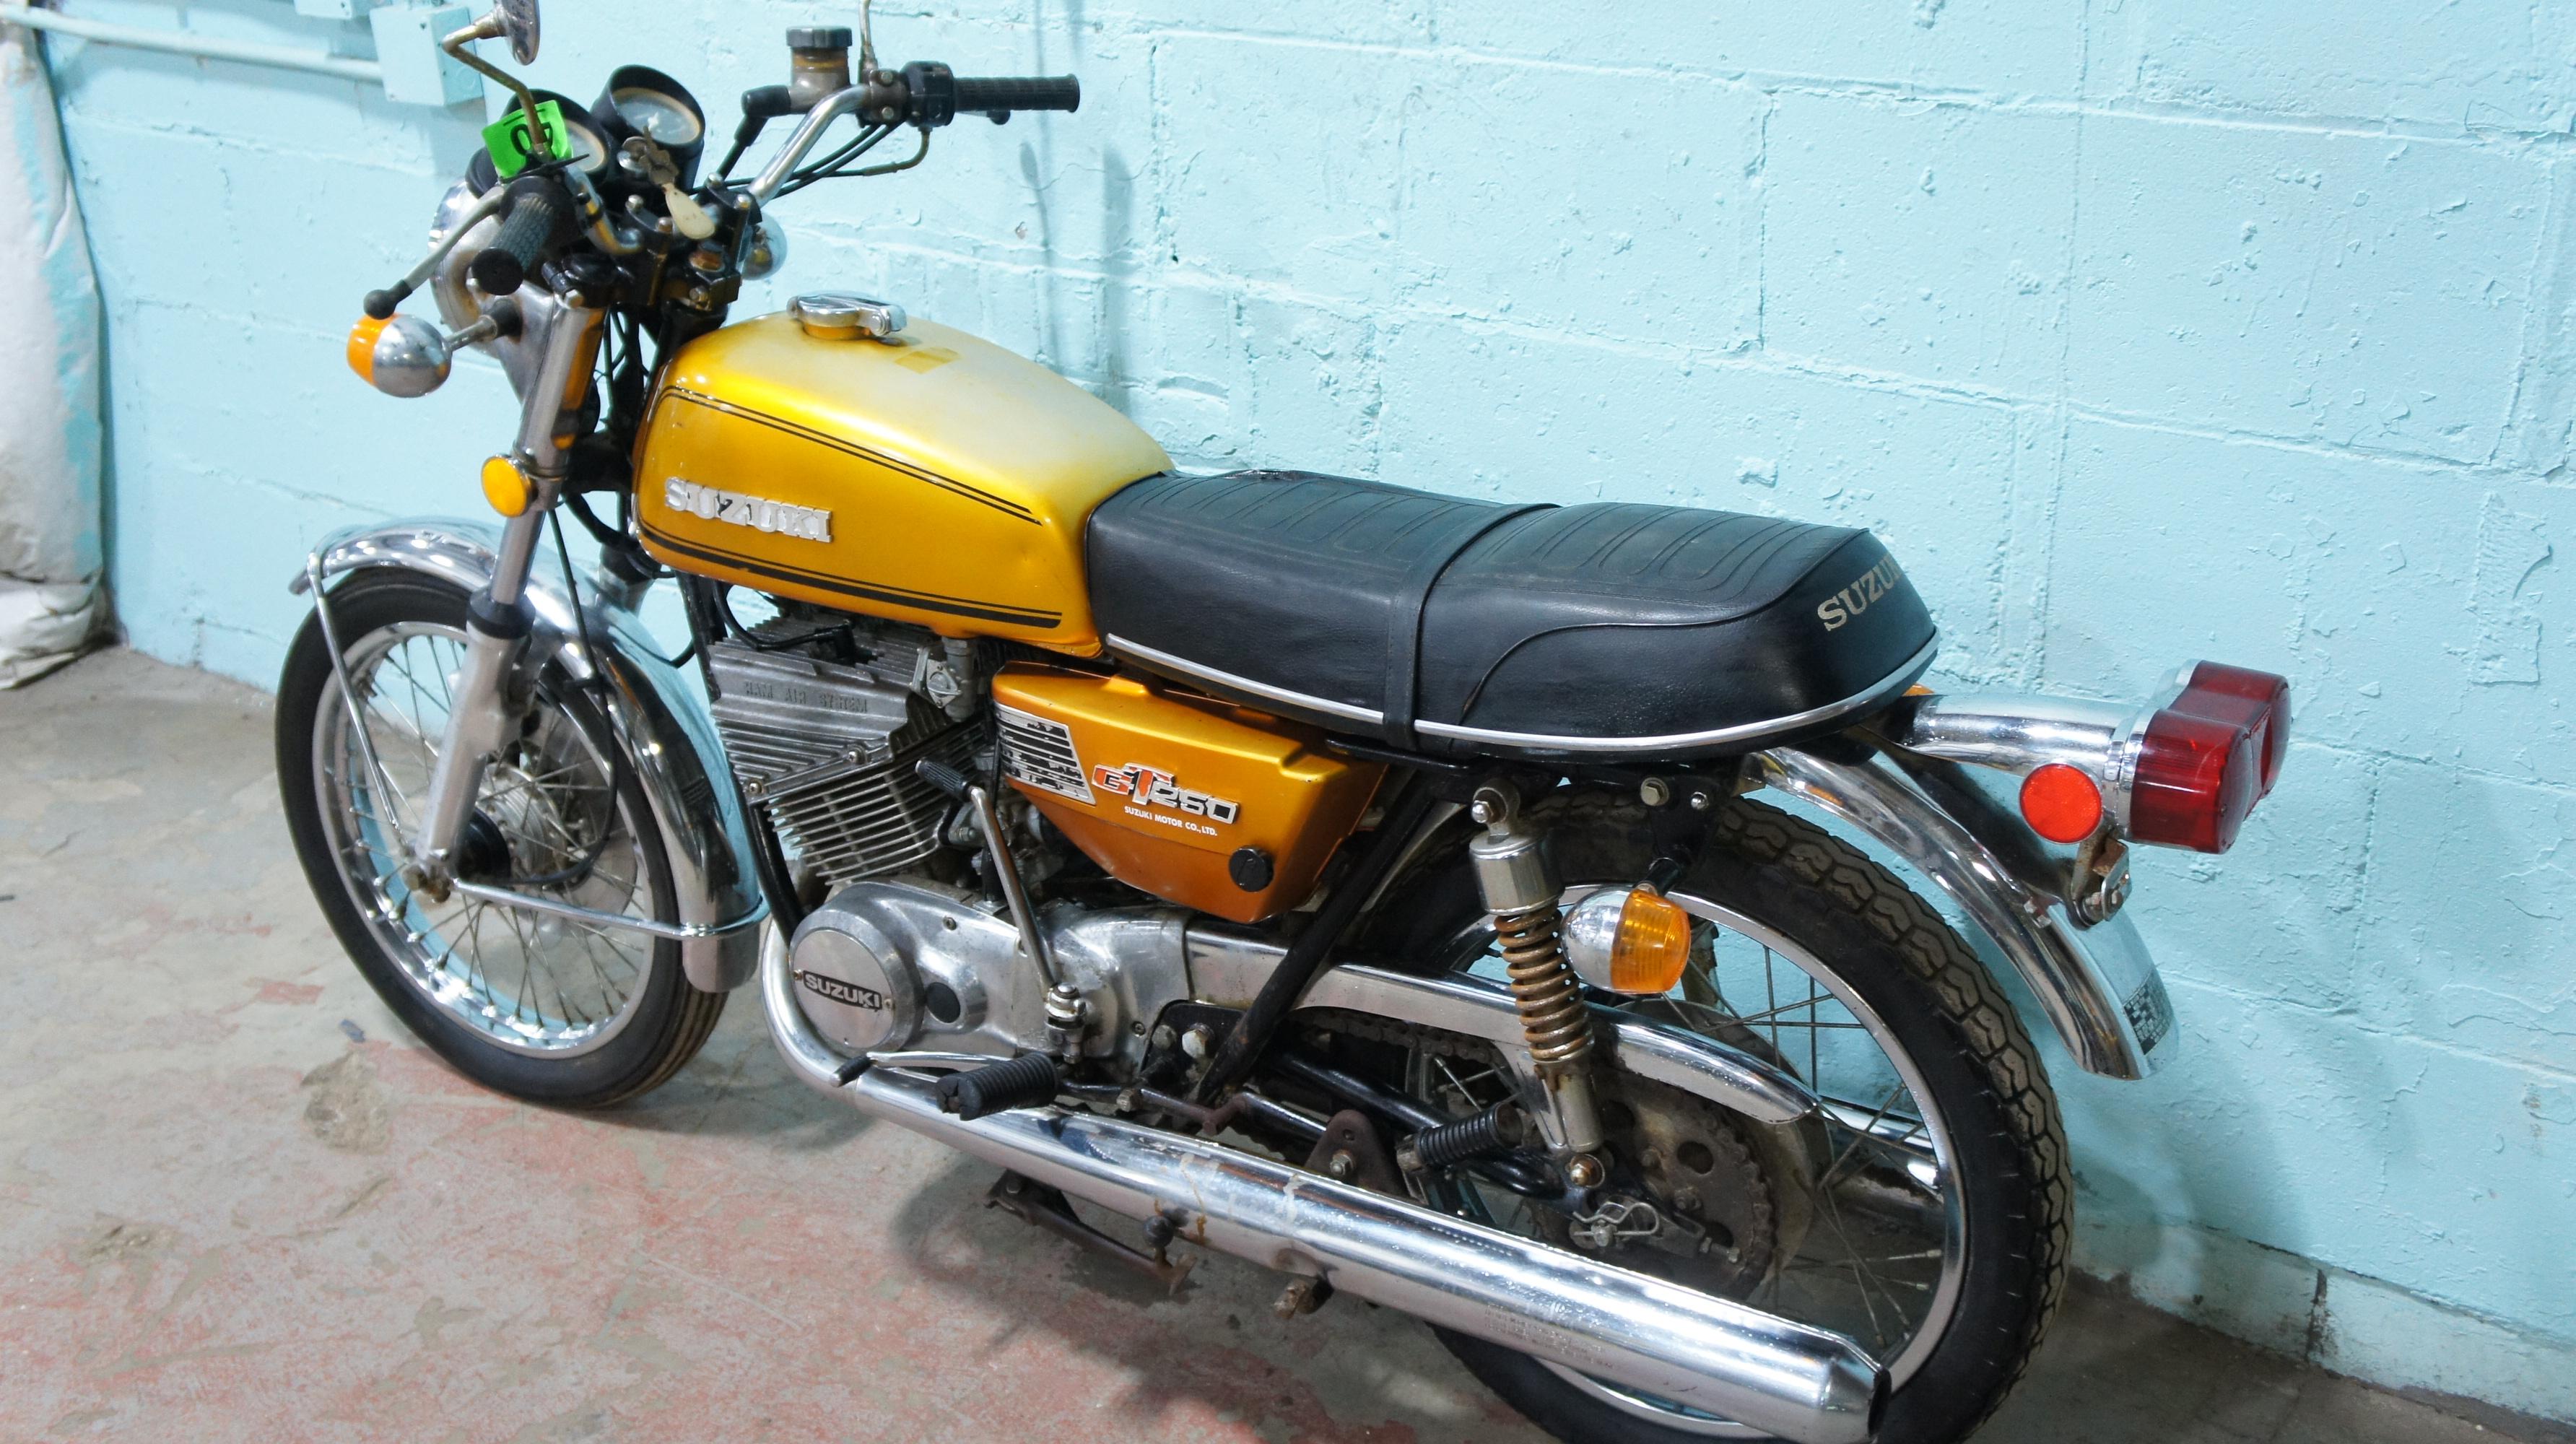 1975 Suzuki GT250 Motorcycle